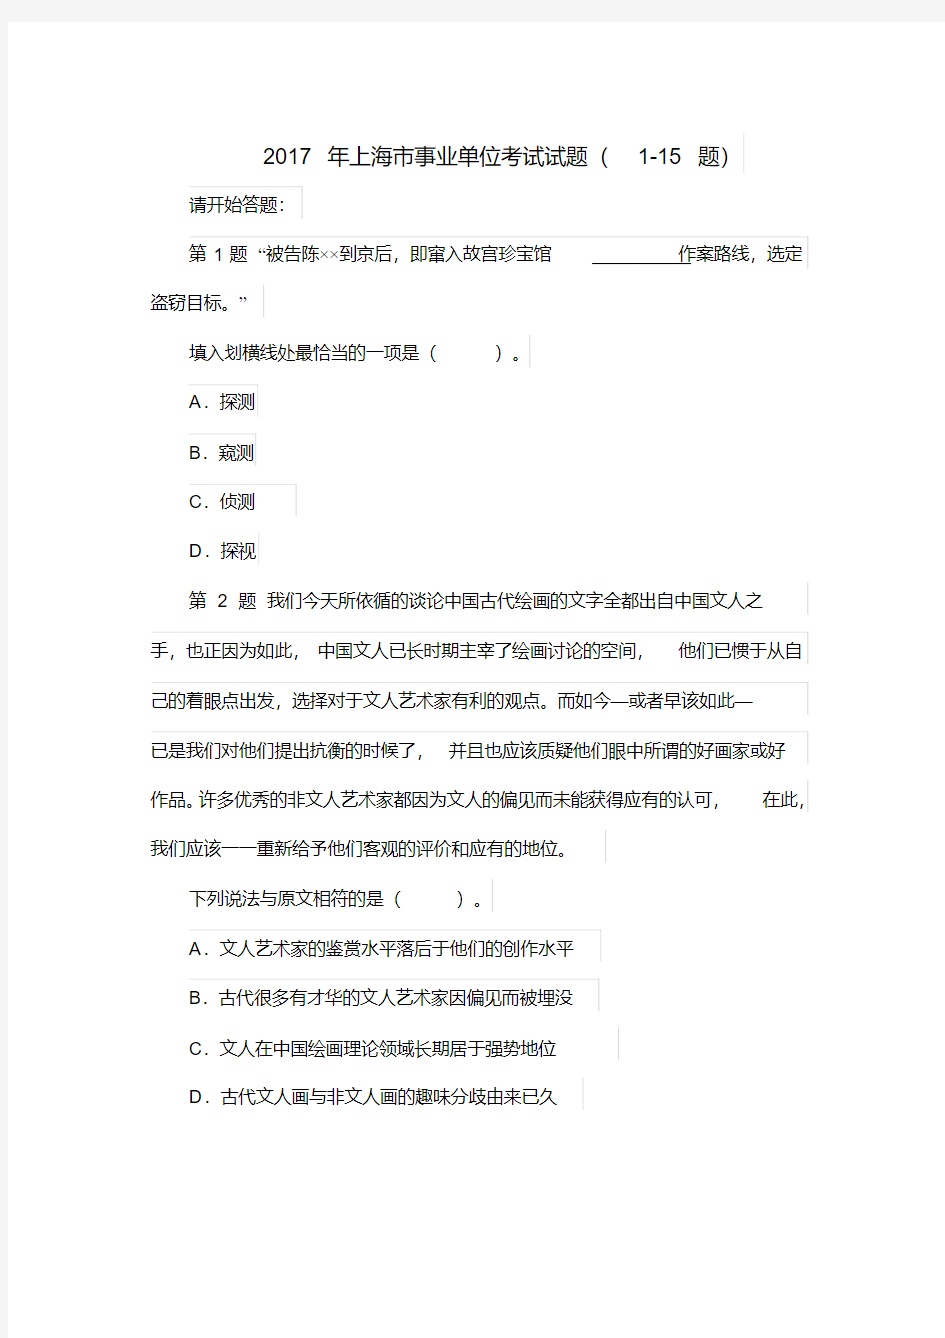 (完整版)2017年上海市事业单位考试试题参考